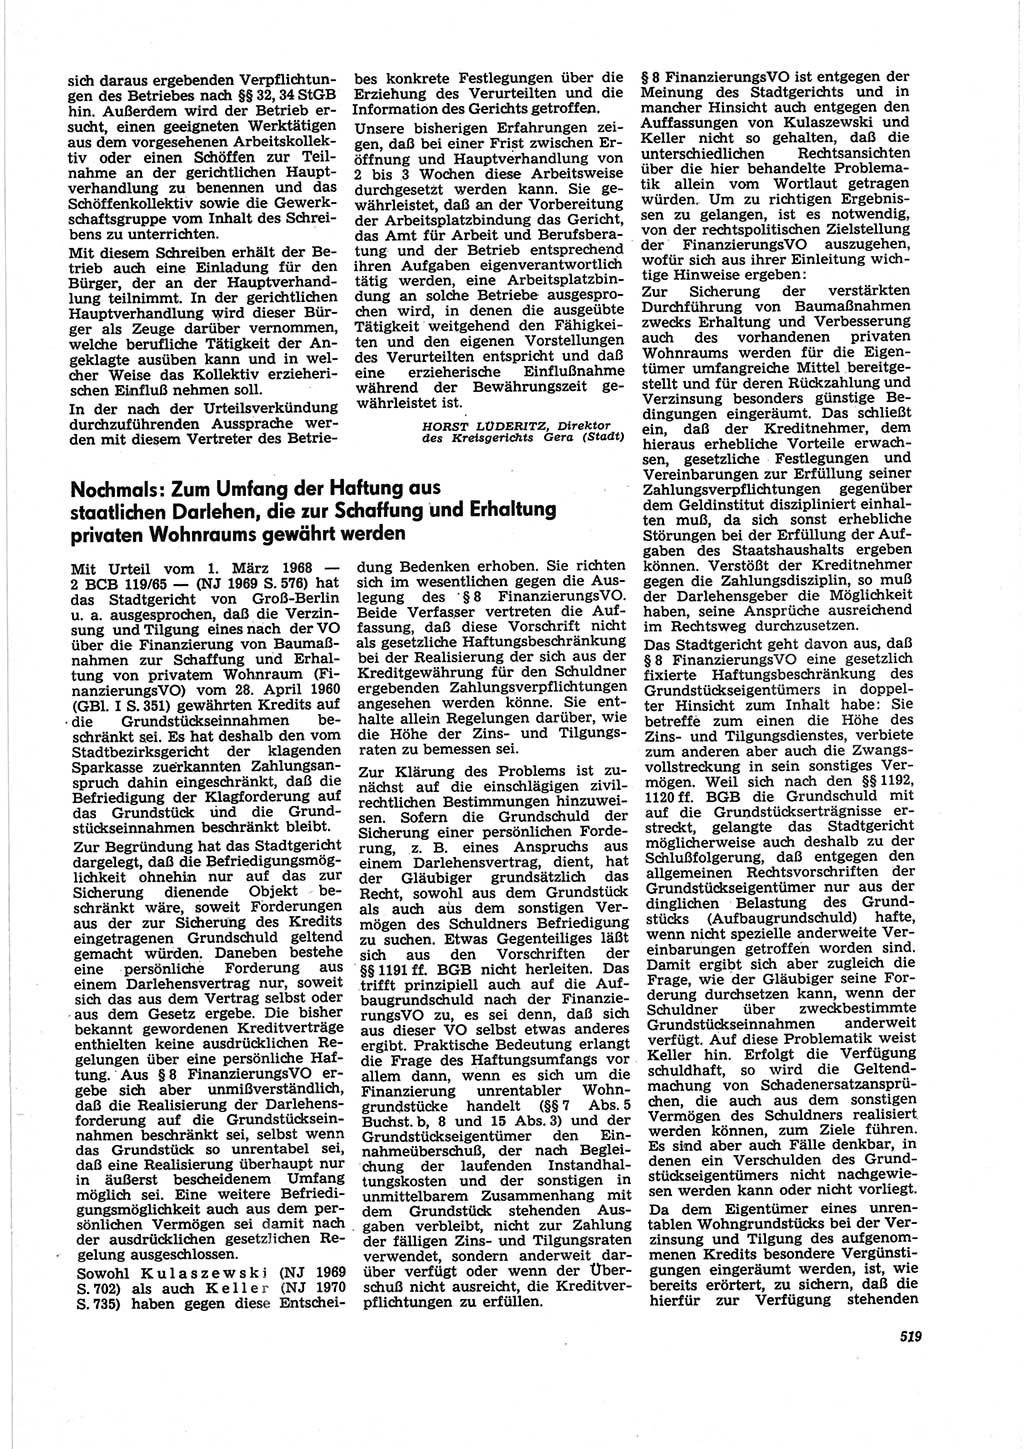 Neue Justiz (NJ), Zeitschrift für Recht und Rechtswissenschaft [Deutsche Demokratische Republik (DDR)], 25. Jahrgang 1971, Seite 519 (NJ DDR 1971, S. 519)